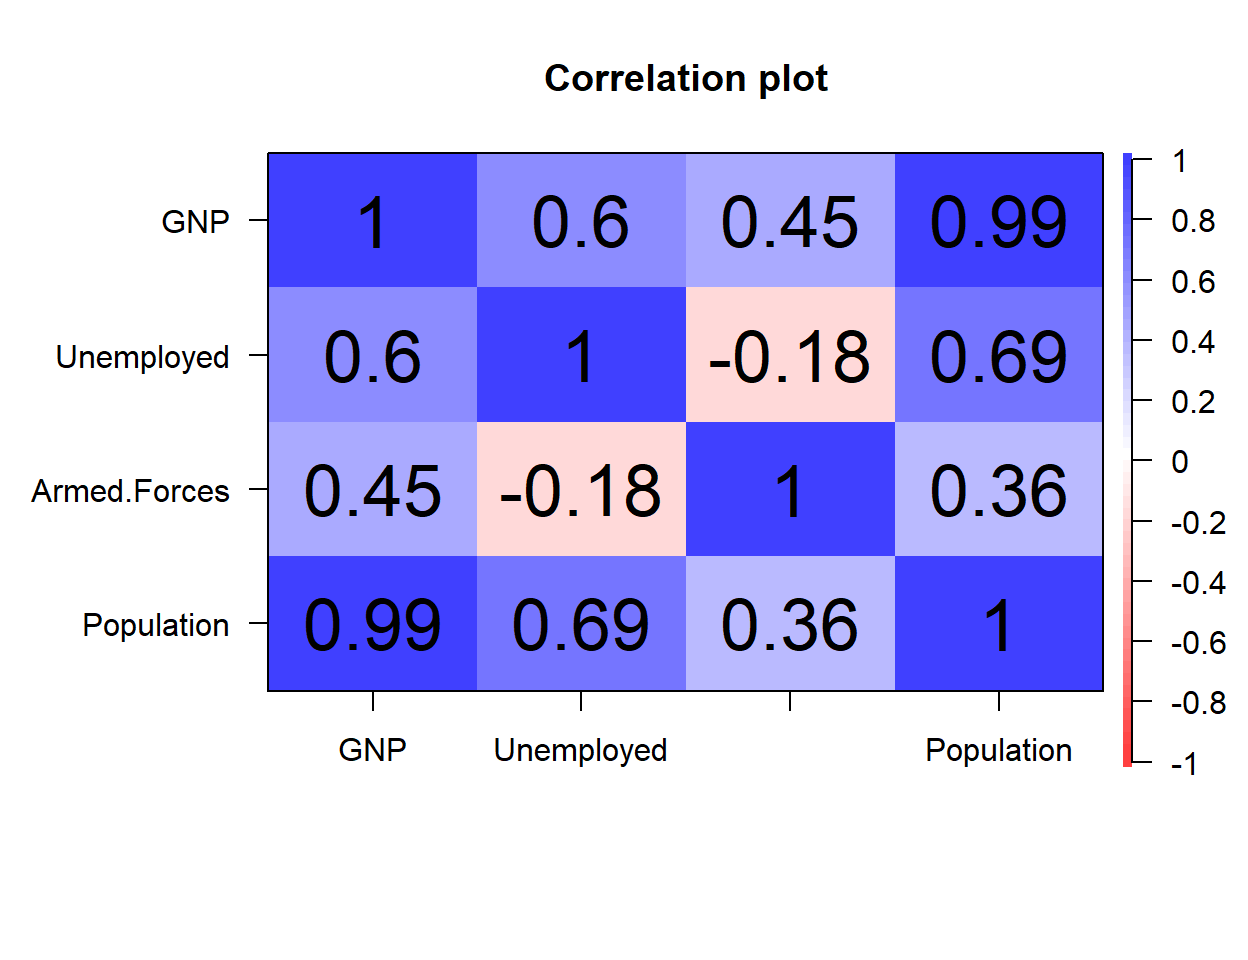 Función corPlot sin valores escalados por el nivel de correlación